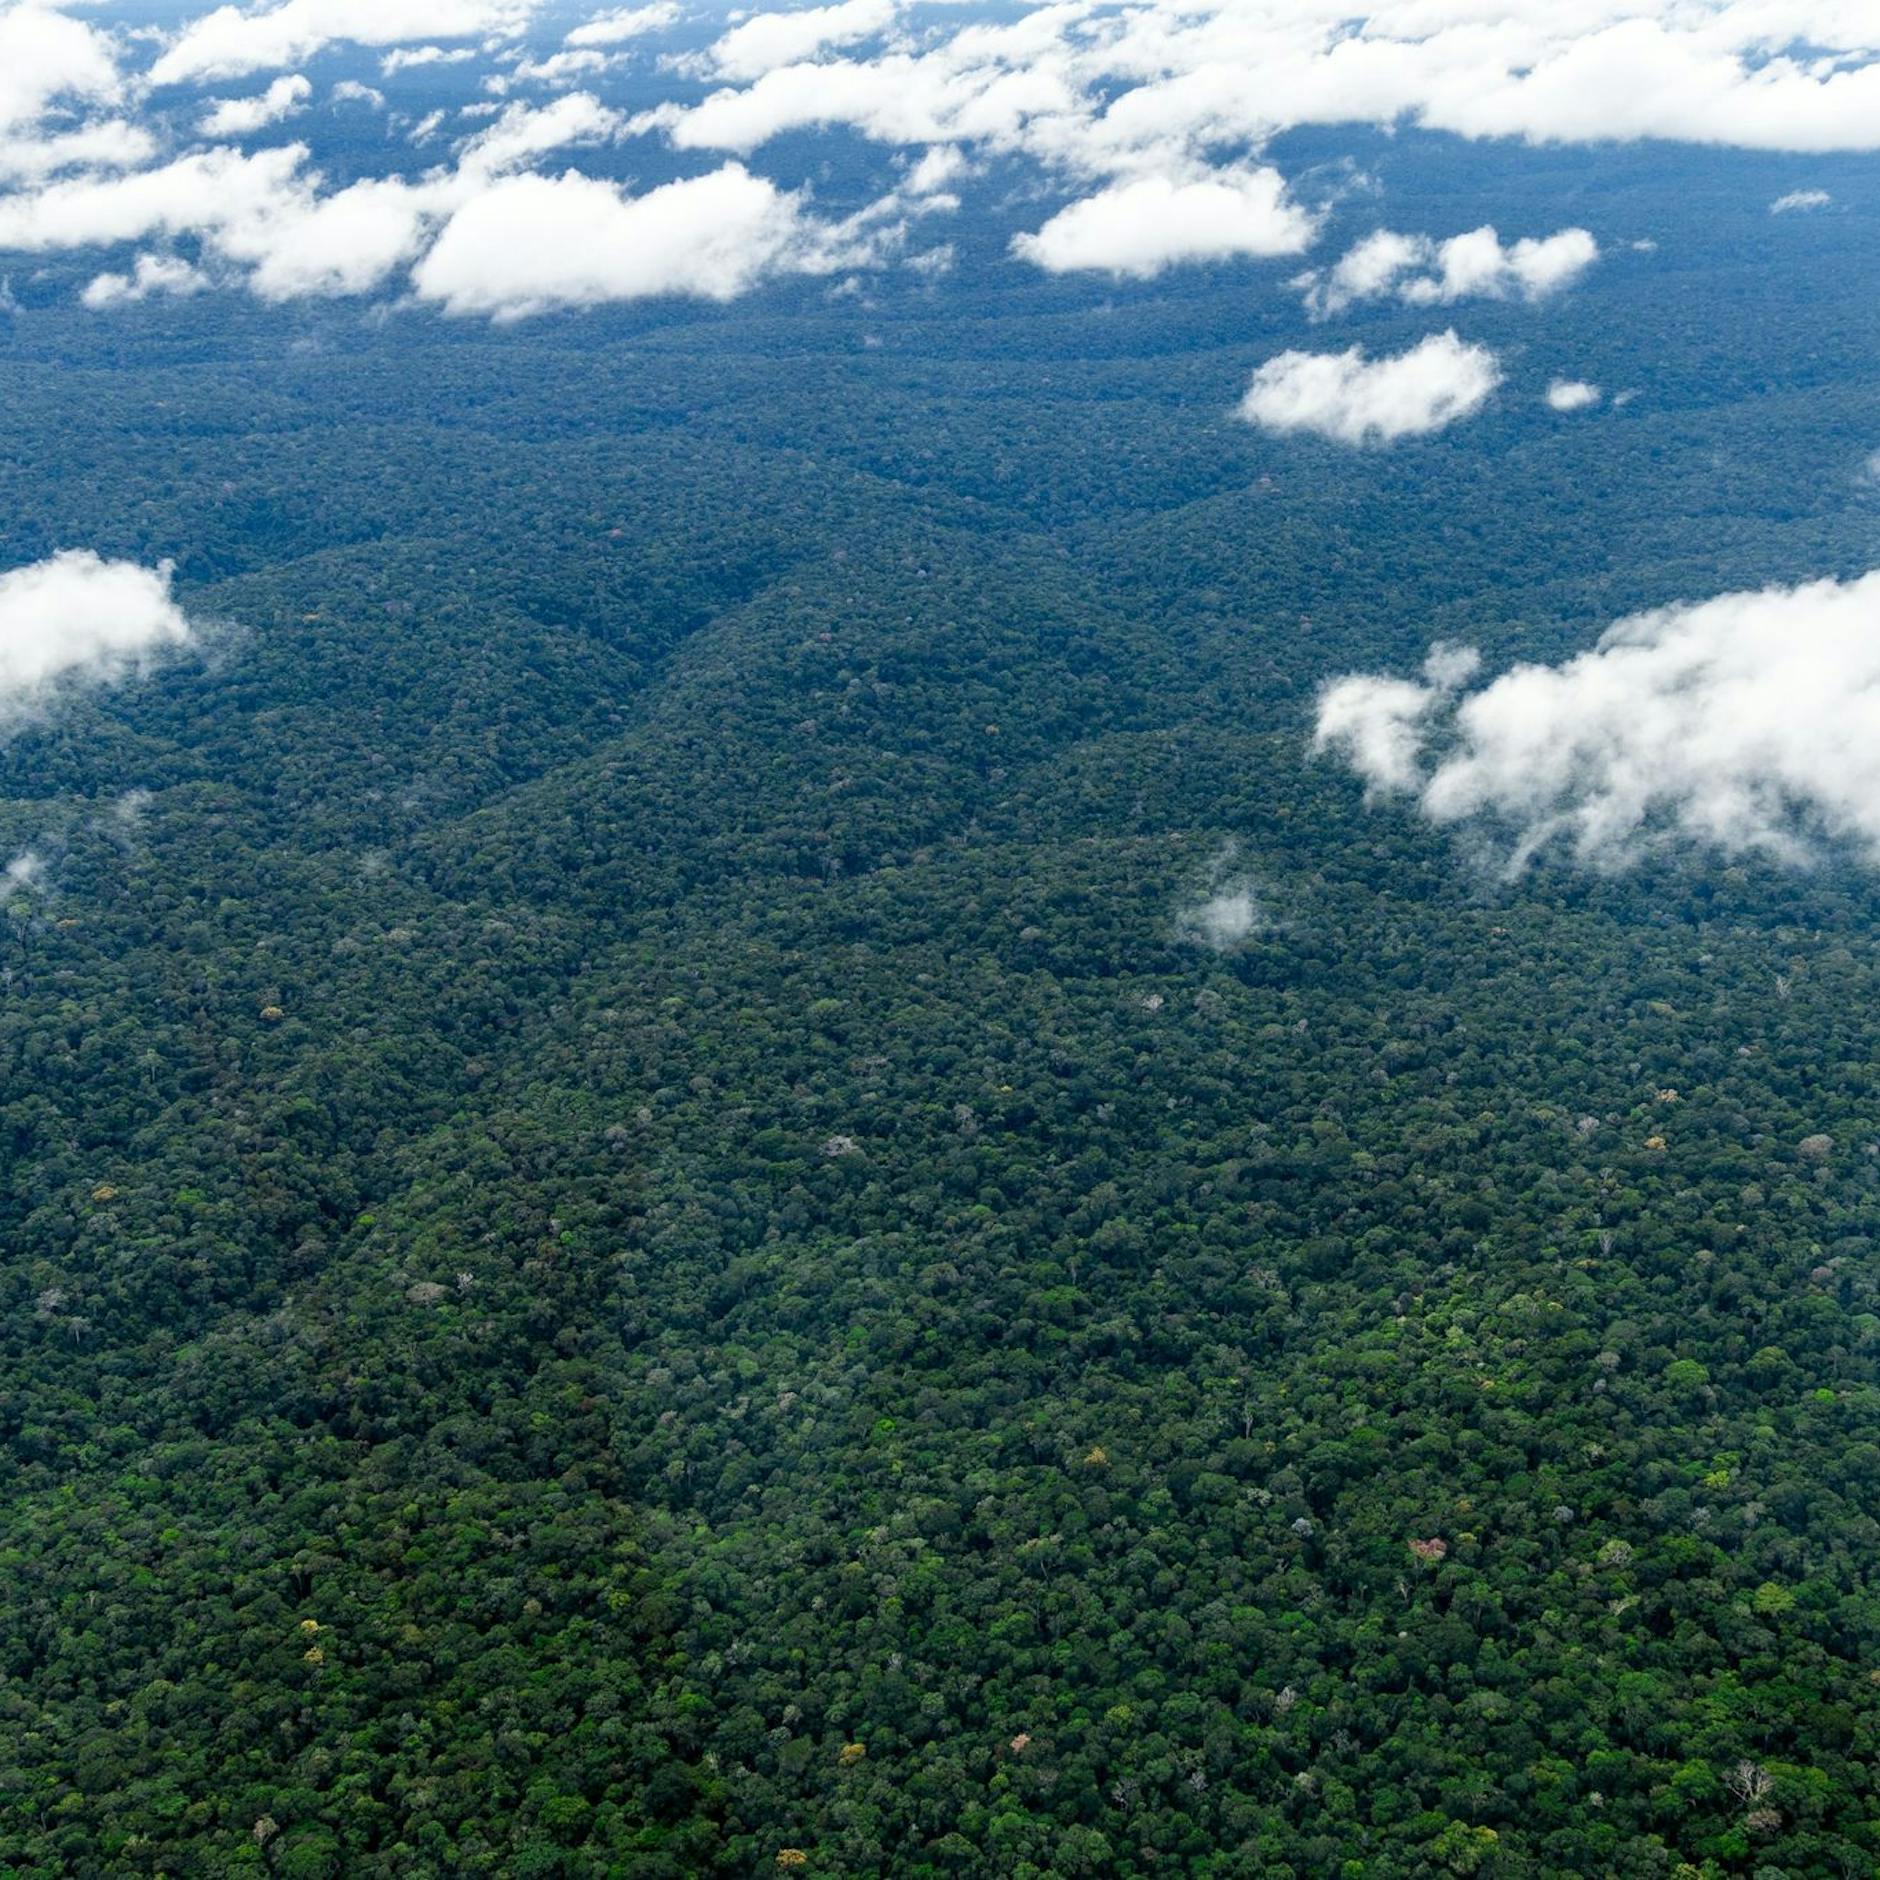 Image - Regenwald: Nasa will Zusammenarbeit mit Brasilien erweitern